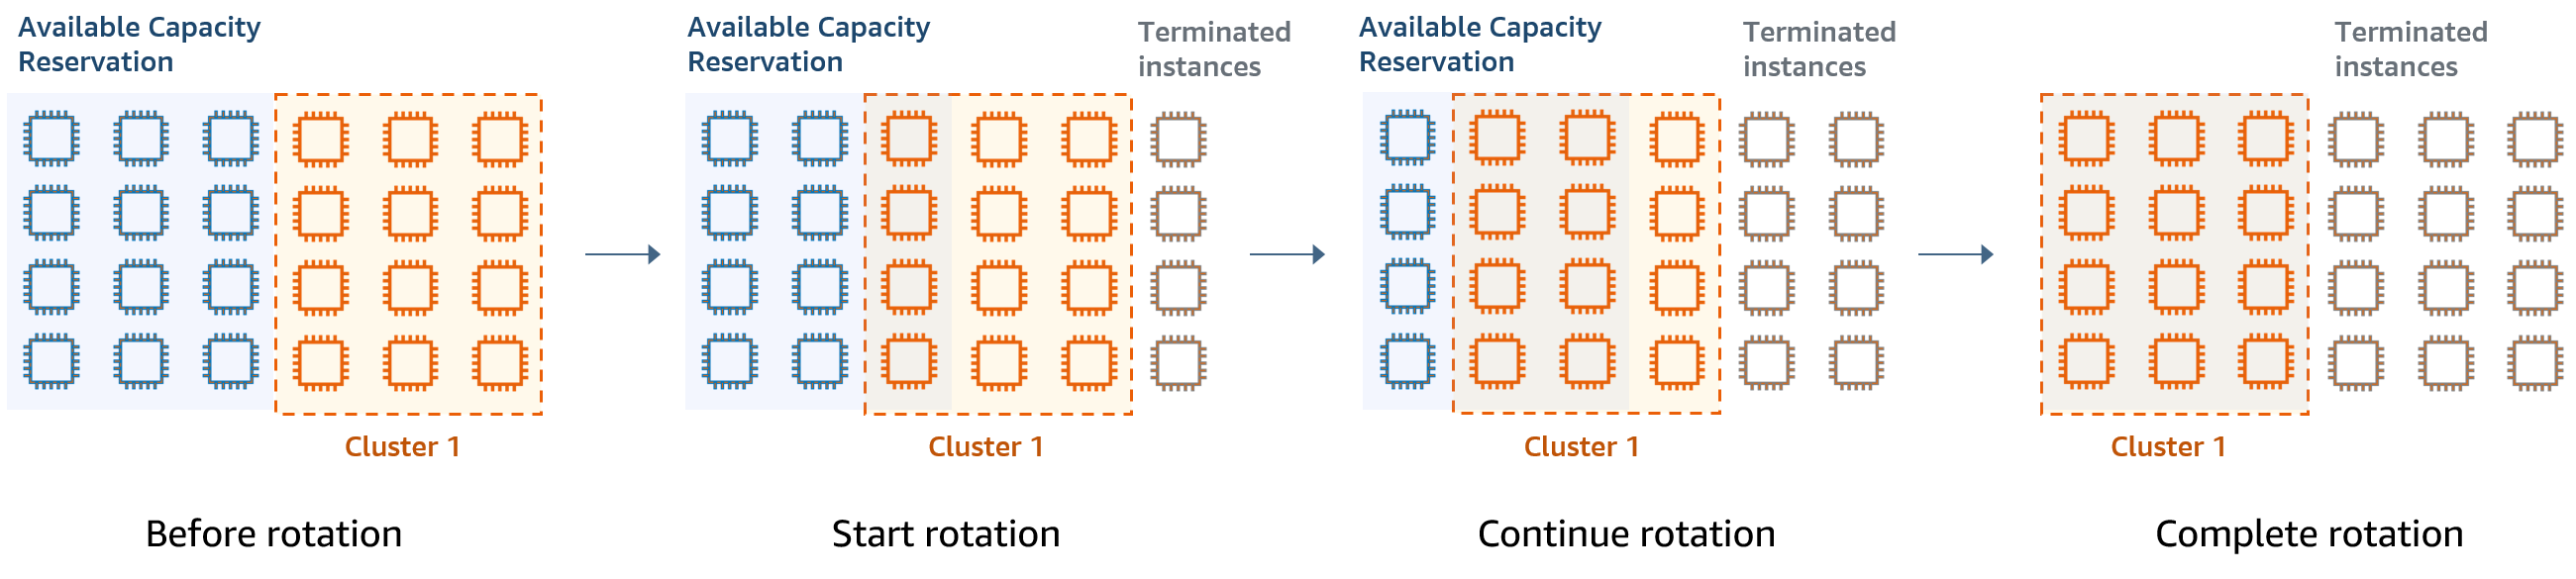 Rotazione del cluster utilizzando prenotazioni della capacità disponibili